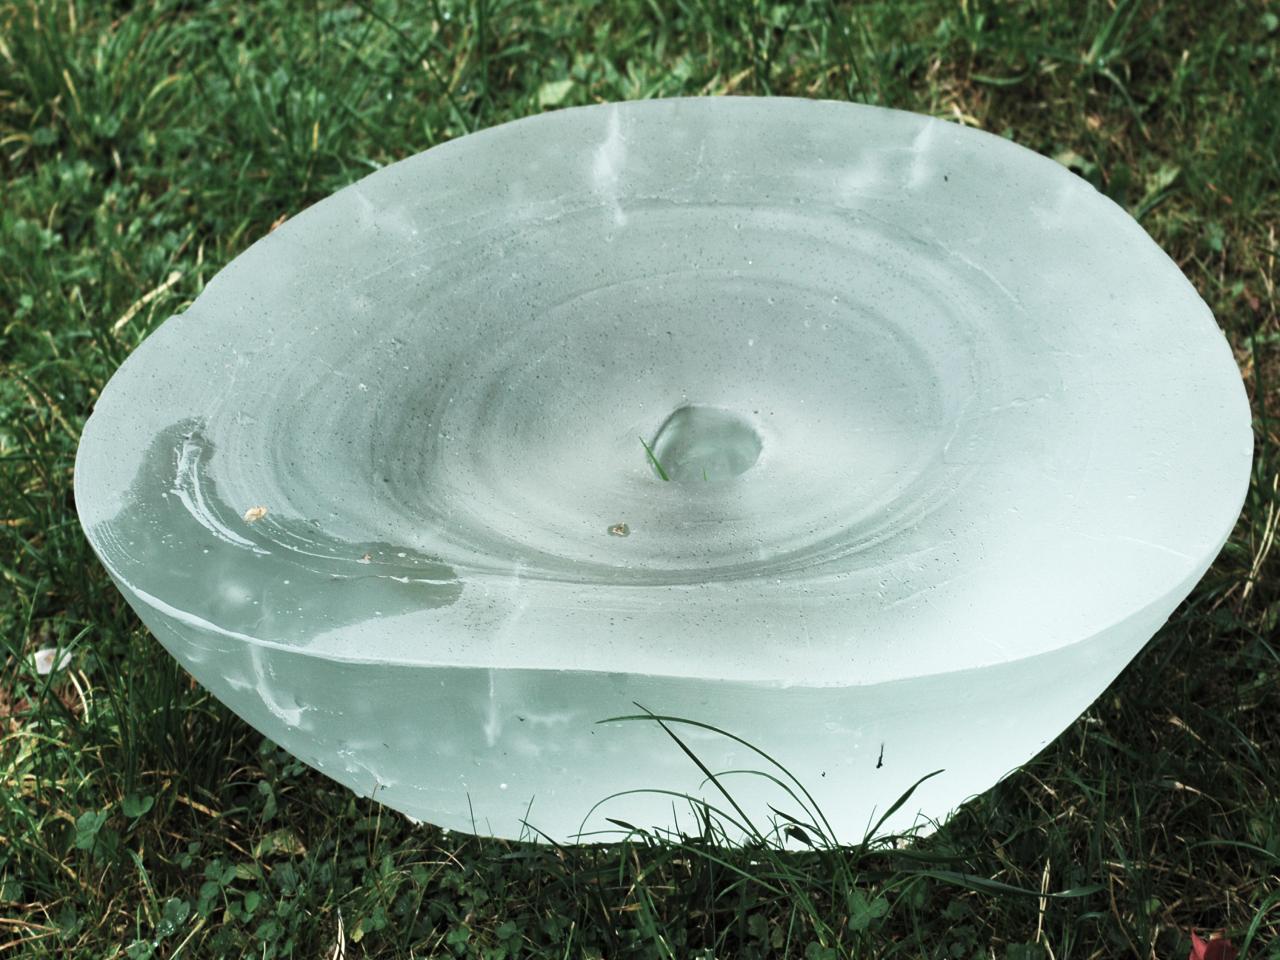  Michaela Trávníčková, Erosion, čajové stolky, 2021, tavené sklo